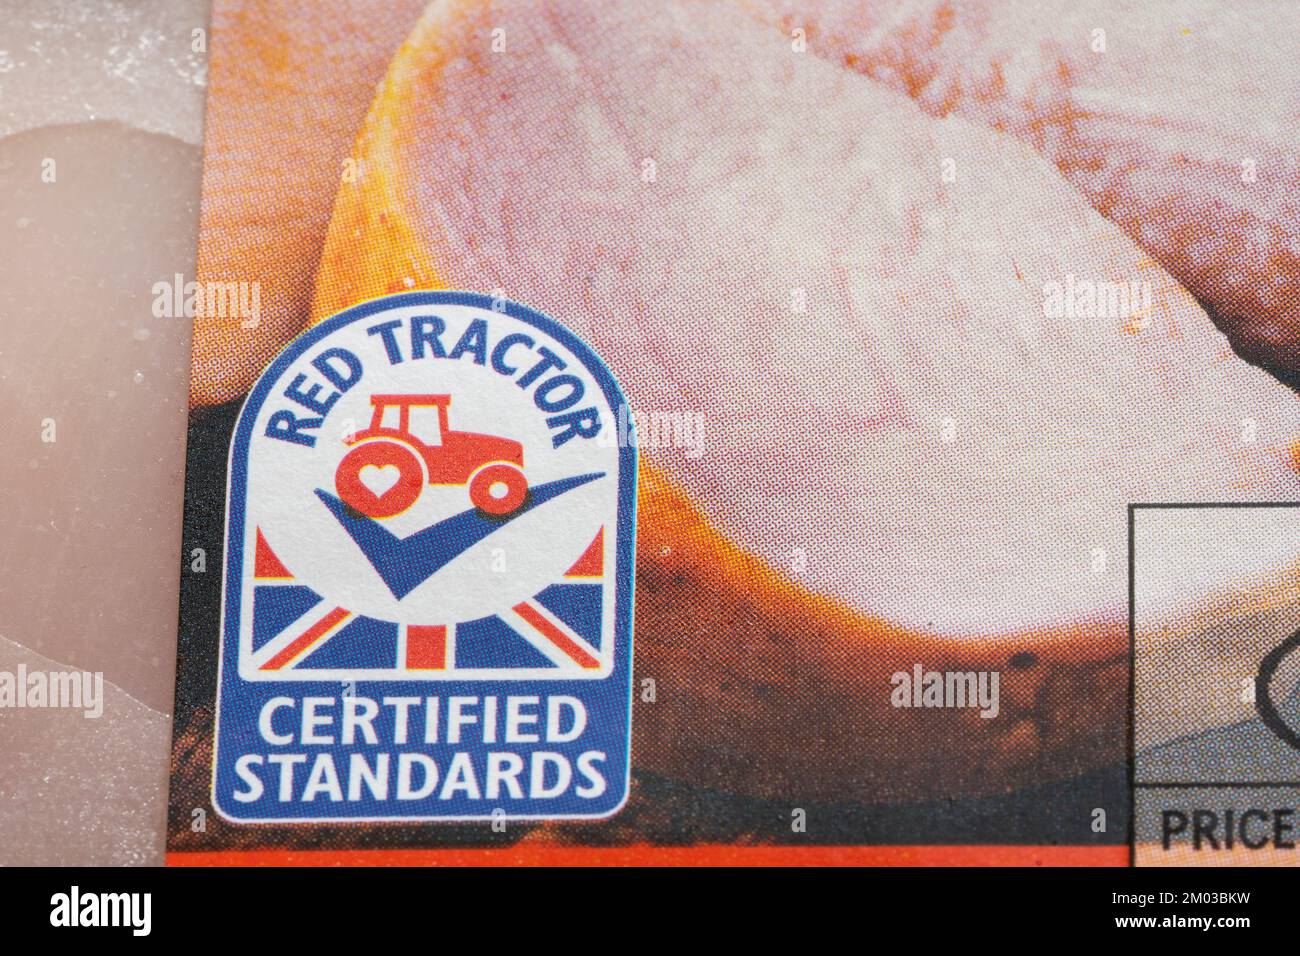 Nahaufnahme des roten Traktorlogos. Assured Food Standards ist ein britisches Unternehmen, das das Qualitätszeichen Red Tractor, ein Produktzertifizierungsprogramm, lizenziert Stockfoto